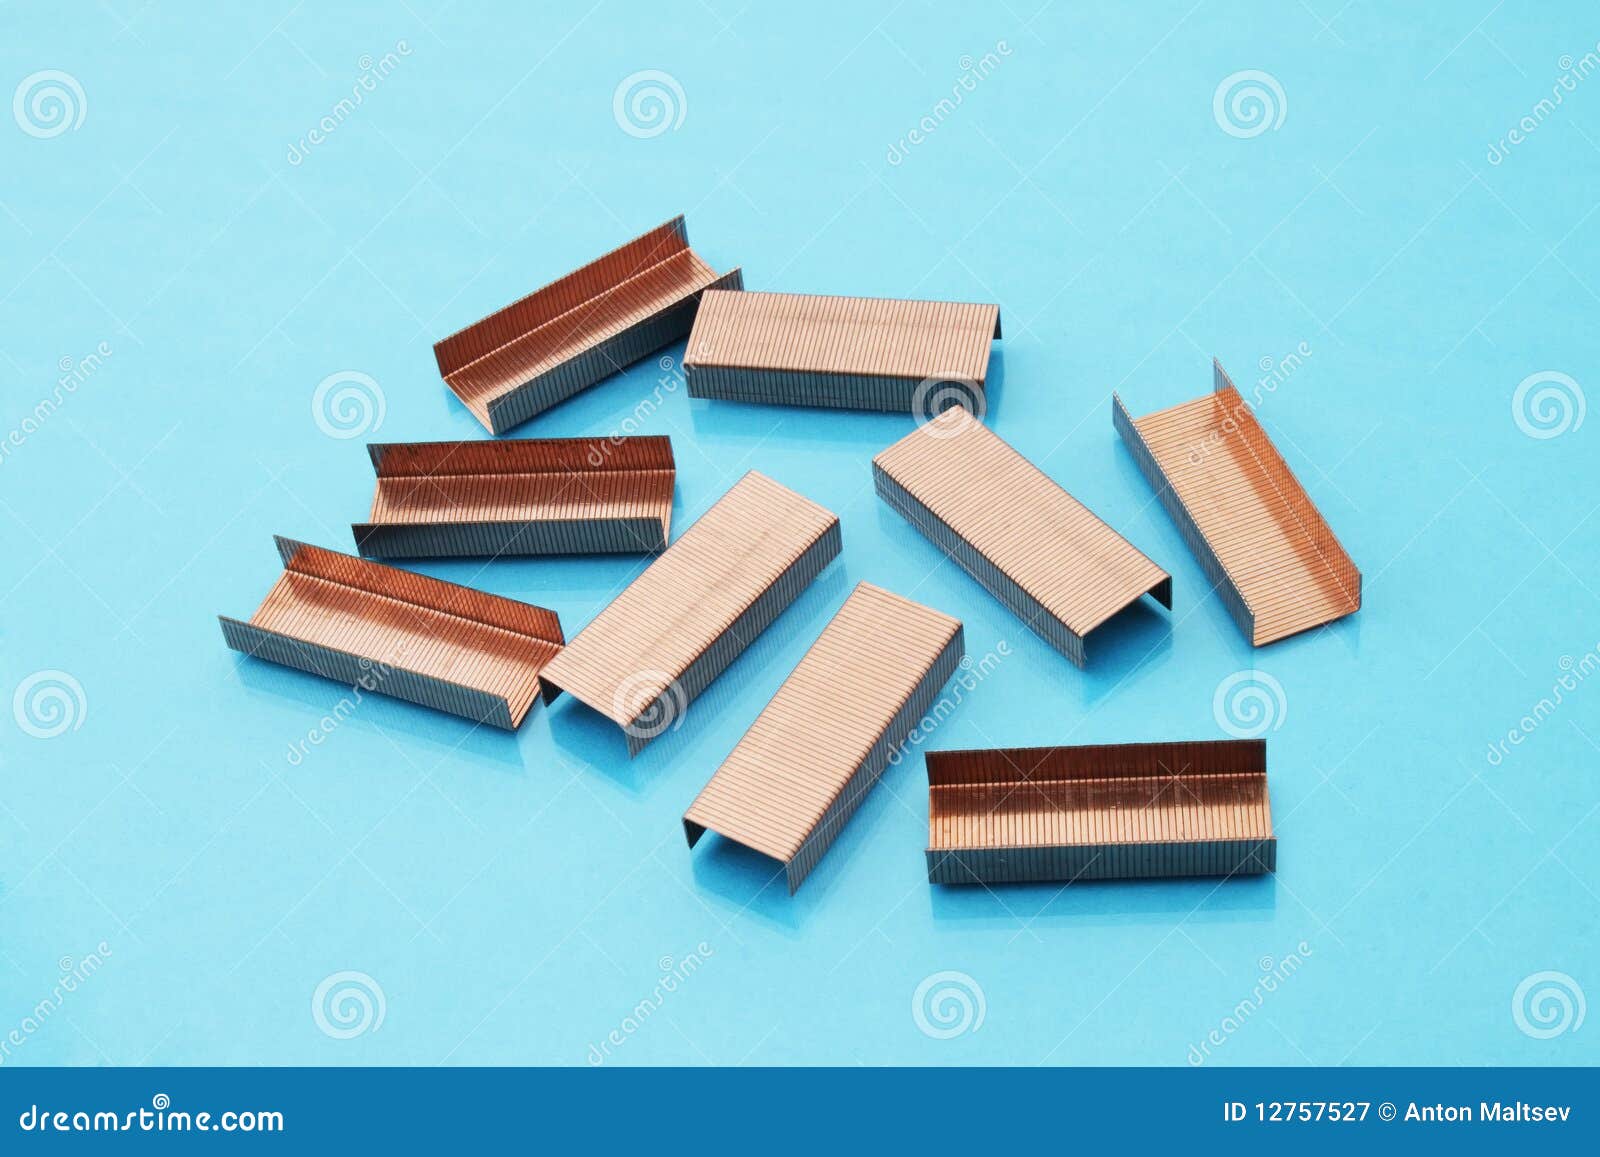 copper staples